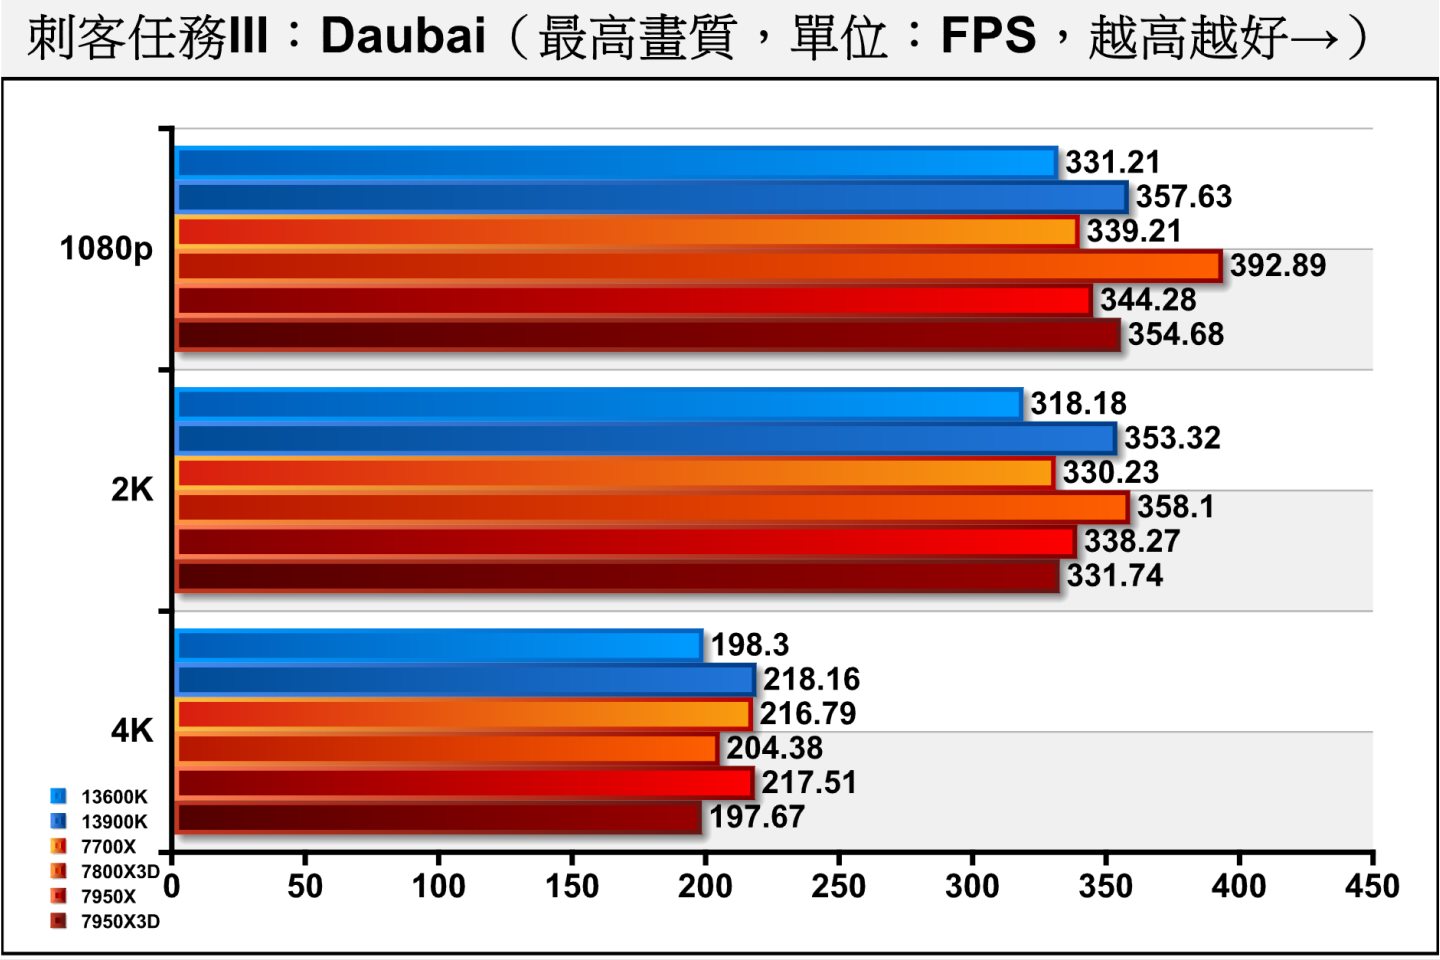 《刺客任務III》Dubai（杜拜）測試項目包含多種場景與NPC角色，整體負擔較低，7800X3D的表現能夠在1080p、2K解析度超越13900K，但在4K解析度僅落後。